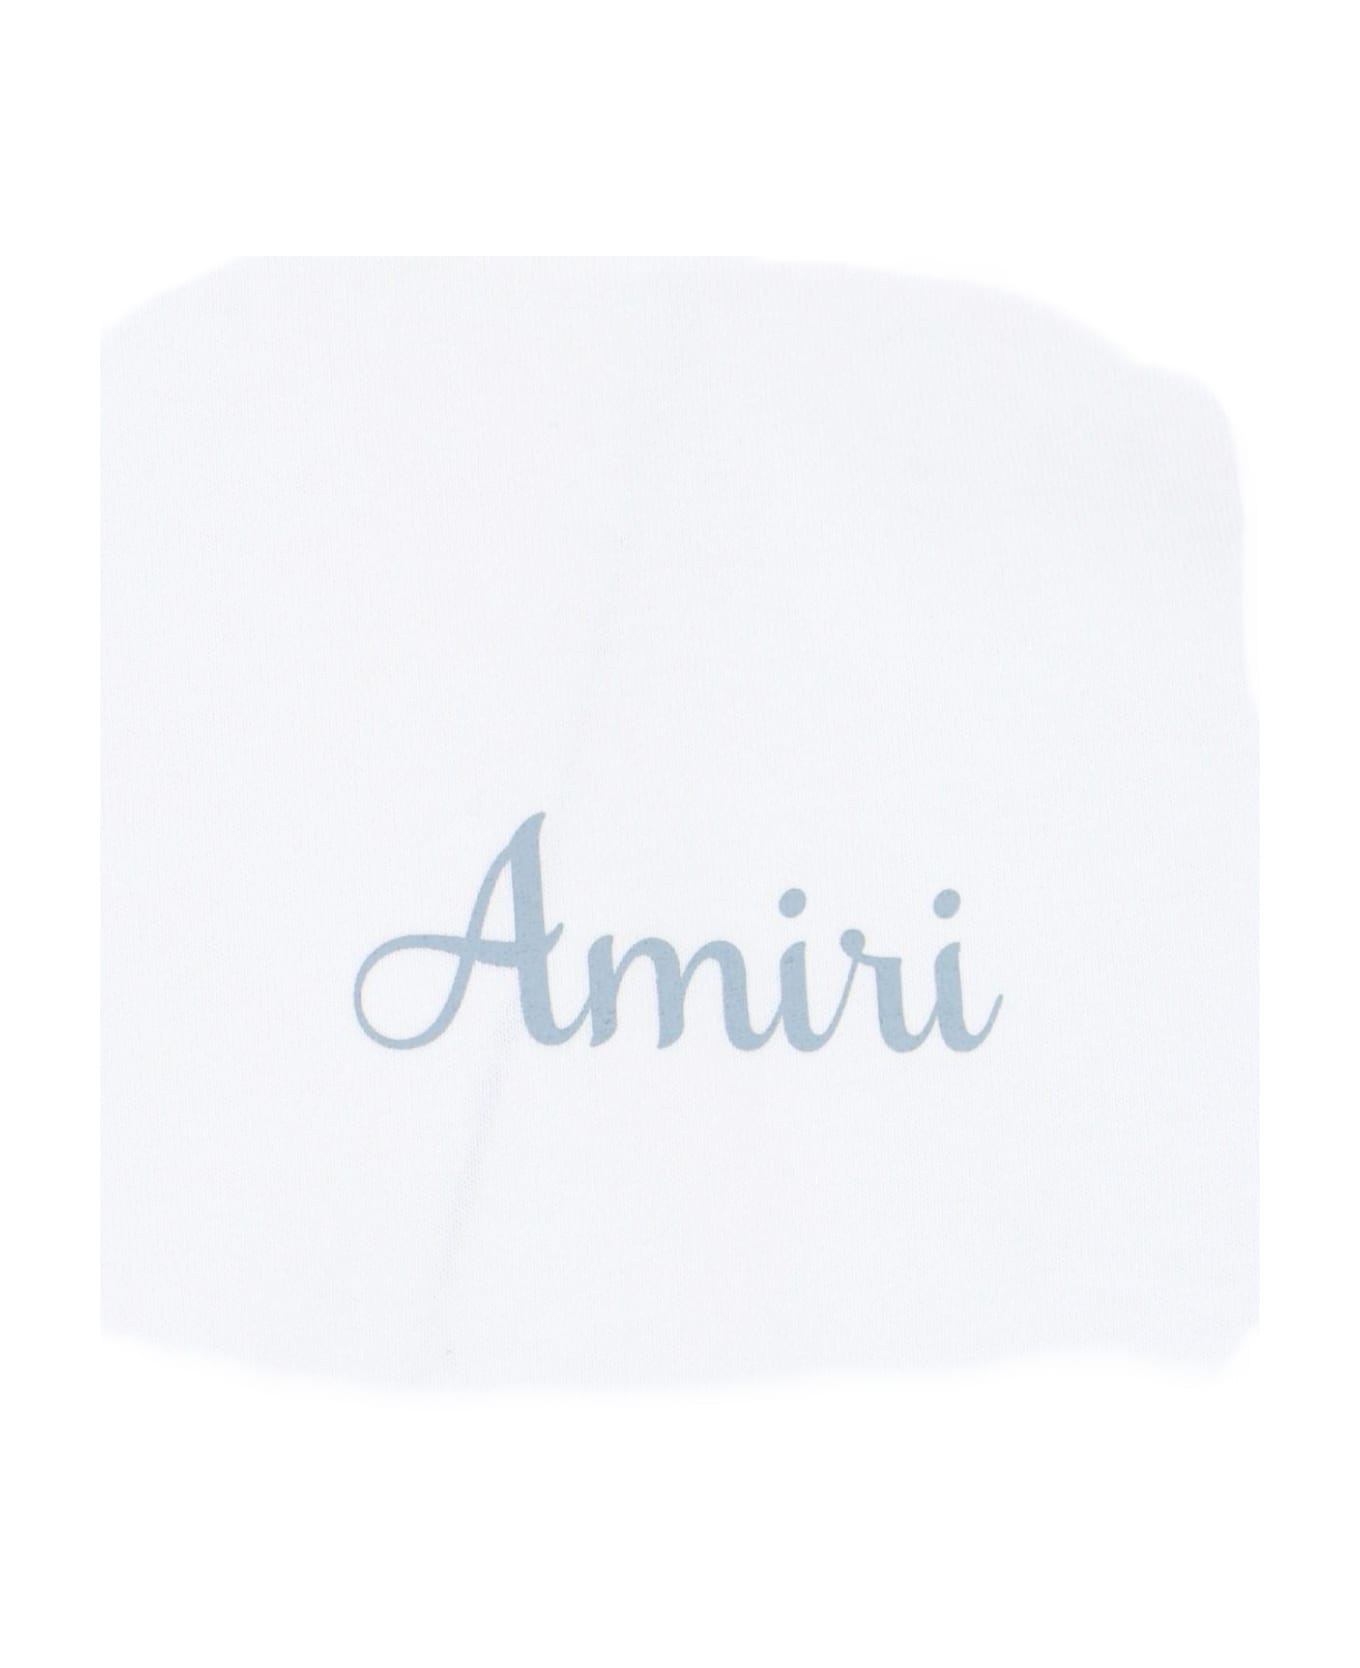 AMIRI Back Print T-shirt - WHITE シャツ